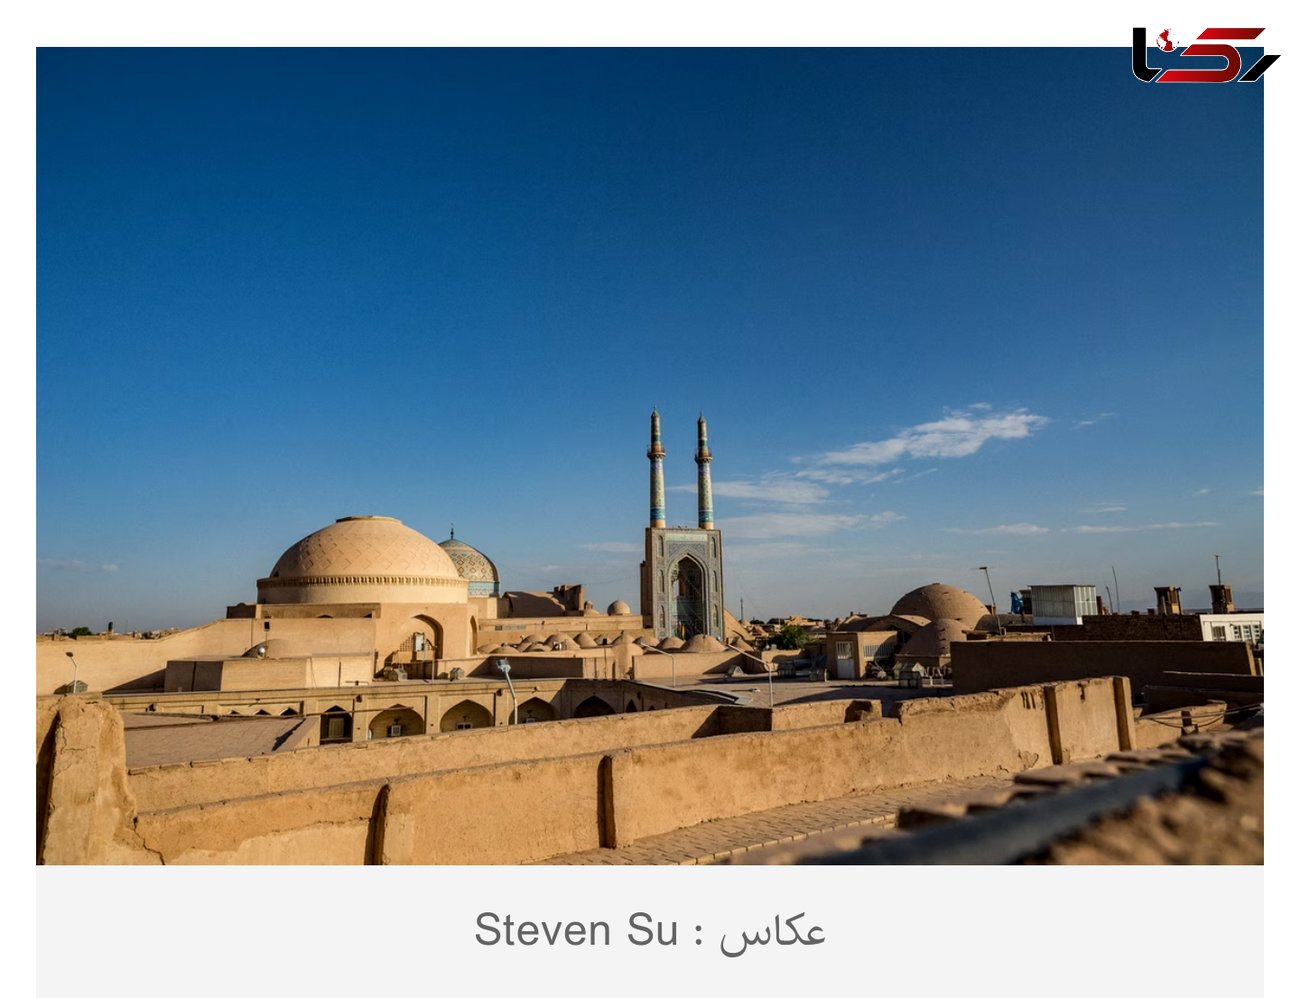 یزد از دریچه دوربین عکاسان خارجی/ seven su  بافت تاریخی یزد را به تصویر کشید